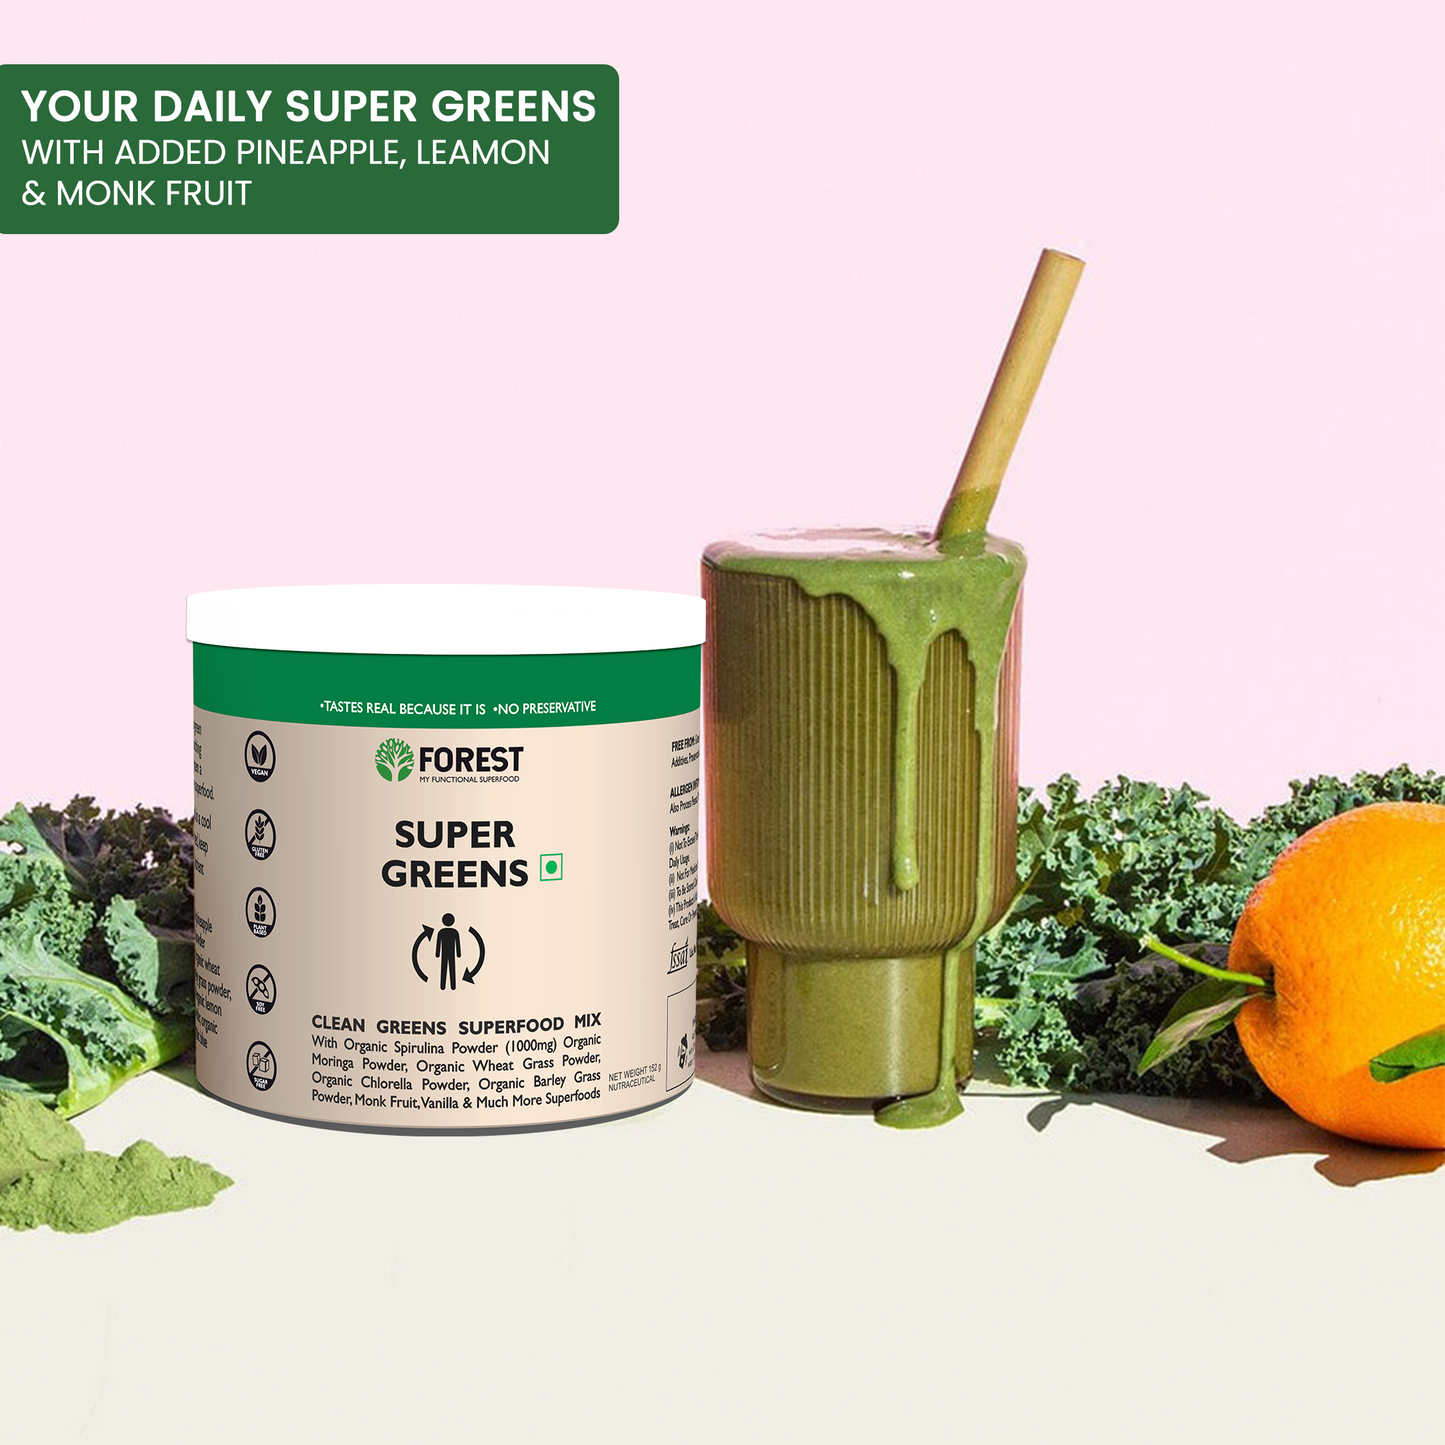 Super Greens (Pineapple lemon) for Immunity and Daily Detox